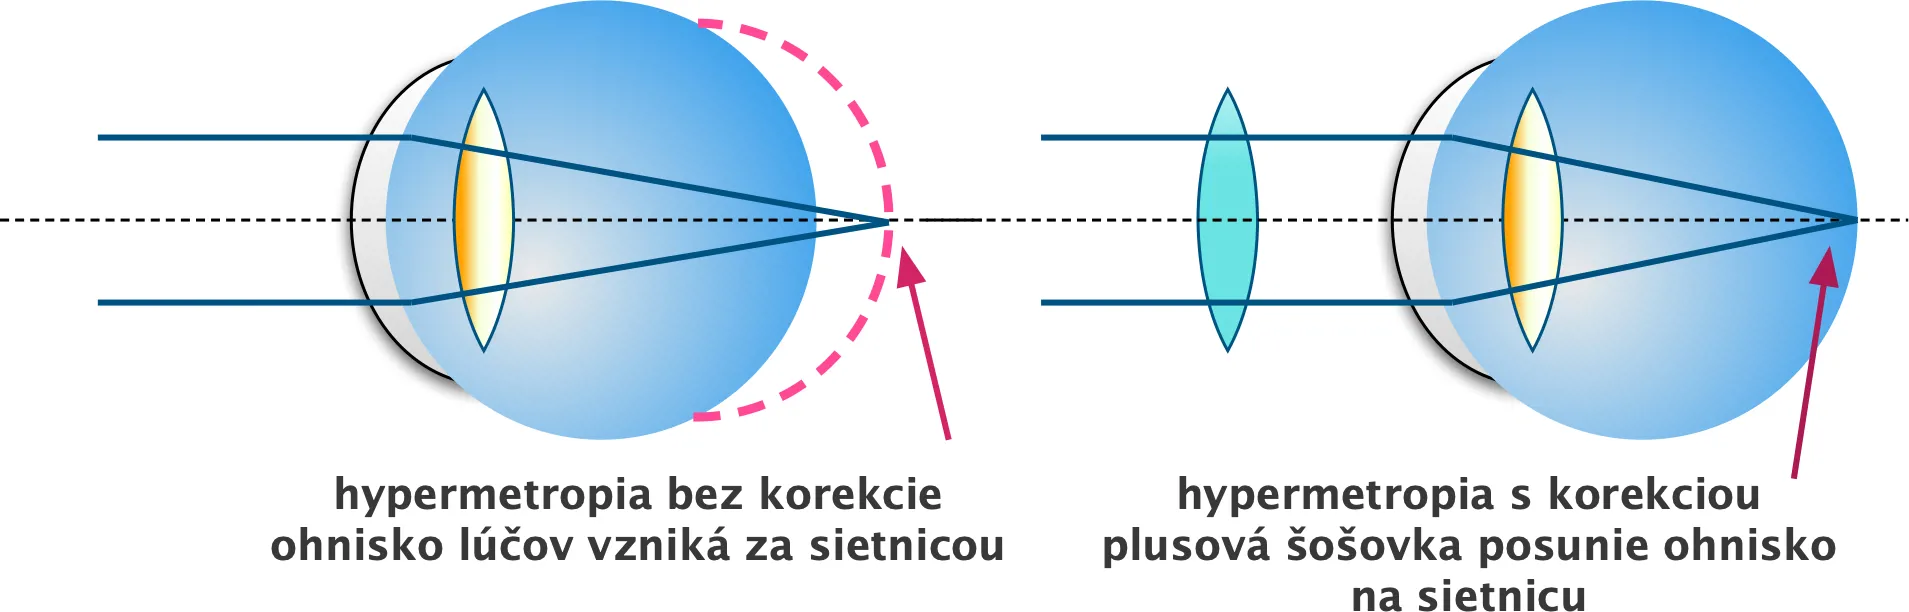 Schéma hypermetropie